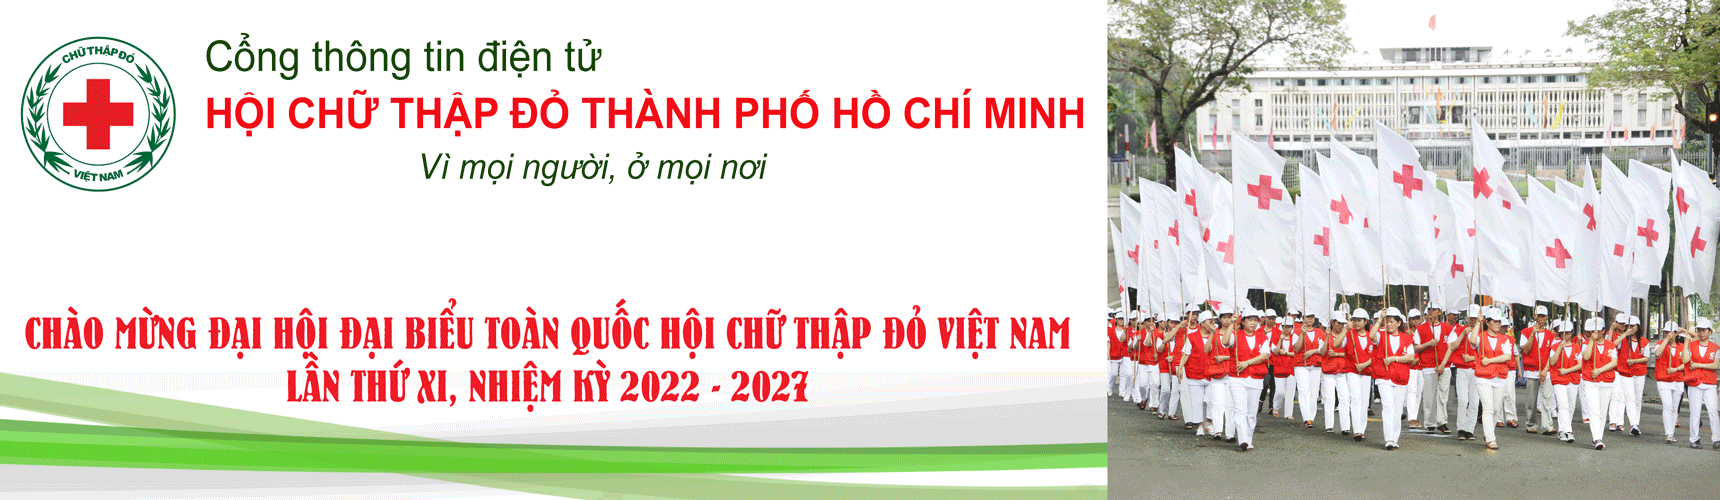 Hội Chữ thập đỏ Thành phố Hồ Chí Minh | Bản tin thời sự HTV9- Hội nghị tuyên dương Hoa việc thiện năm 2022